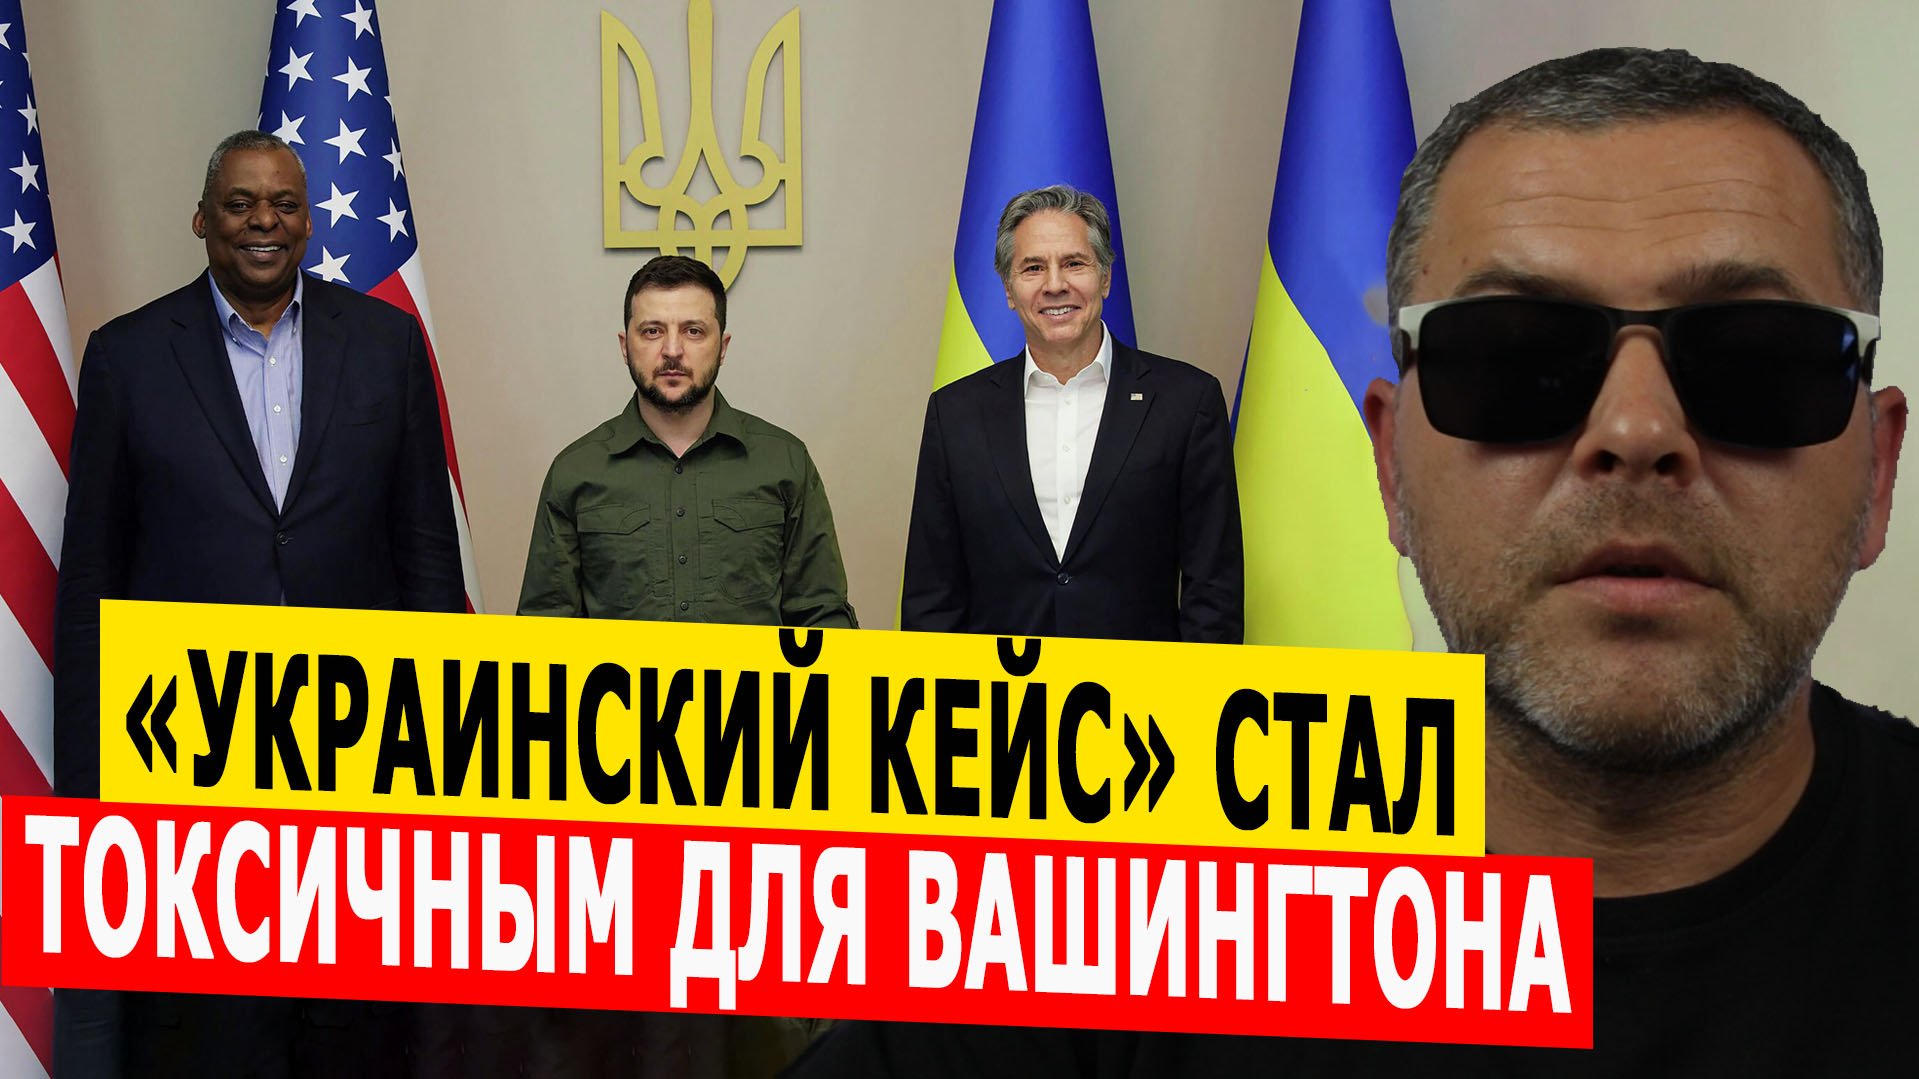 «Украинский кейс» интересует Вашингтон как фактор внутриполитической борьбы